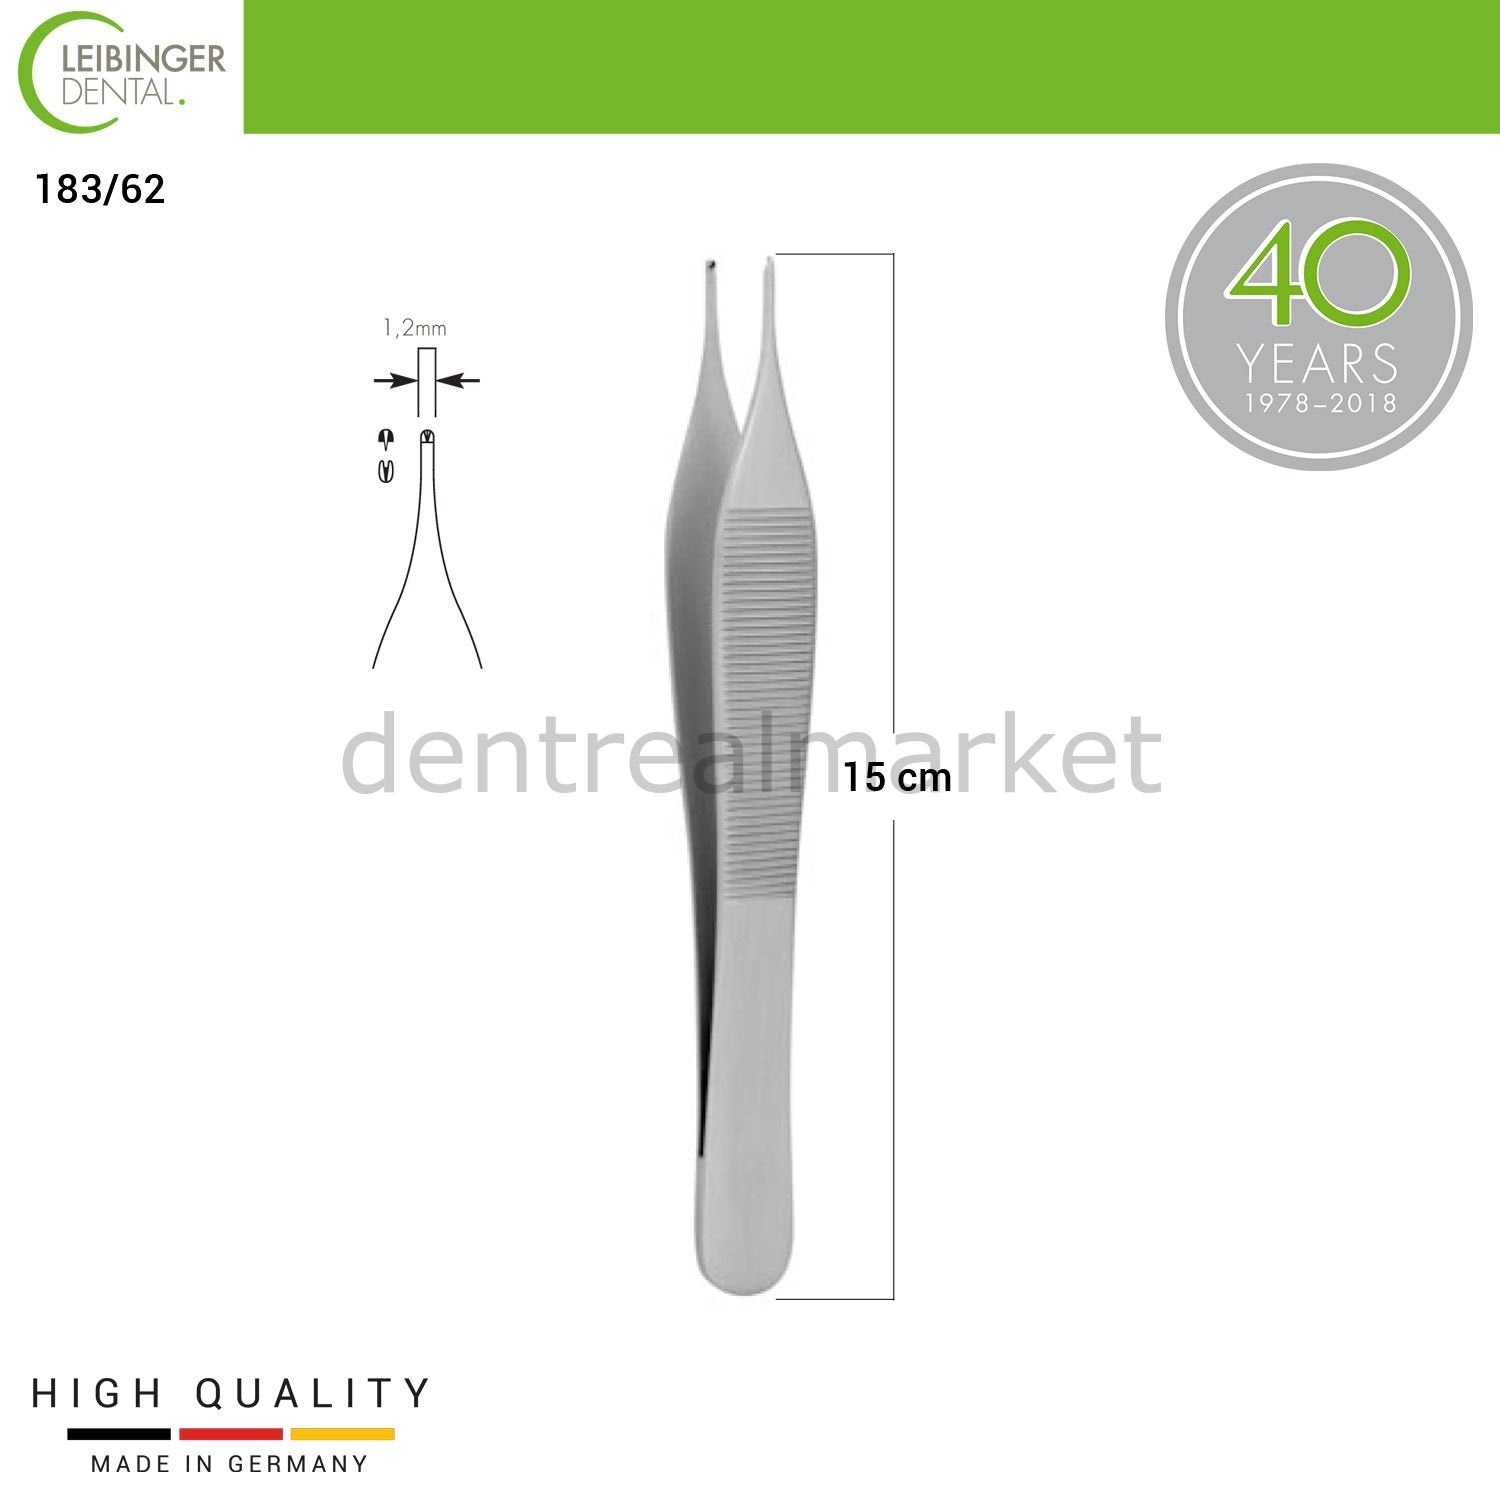 DentrealStore - Leibinger Adson Surgical Tissue Forceps - 15 cm